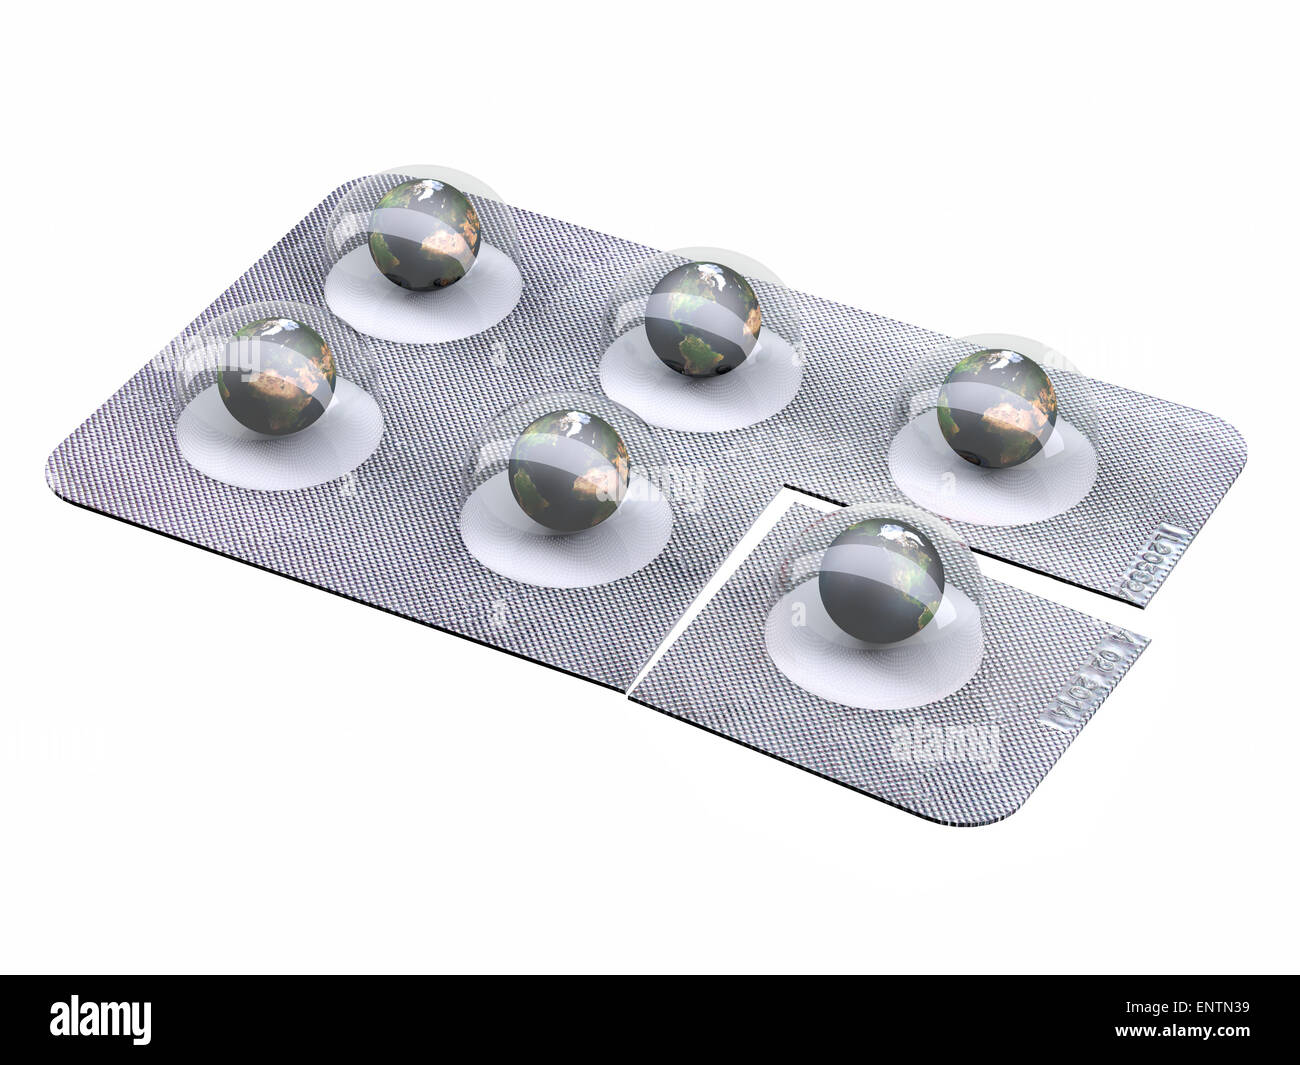 Eart pillole in blister isolati su sfondo bianco, 3d illustrazione Foto Stock